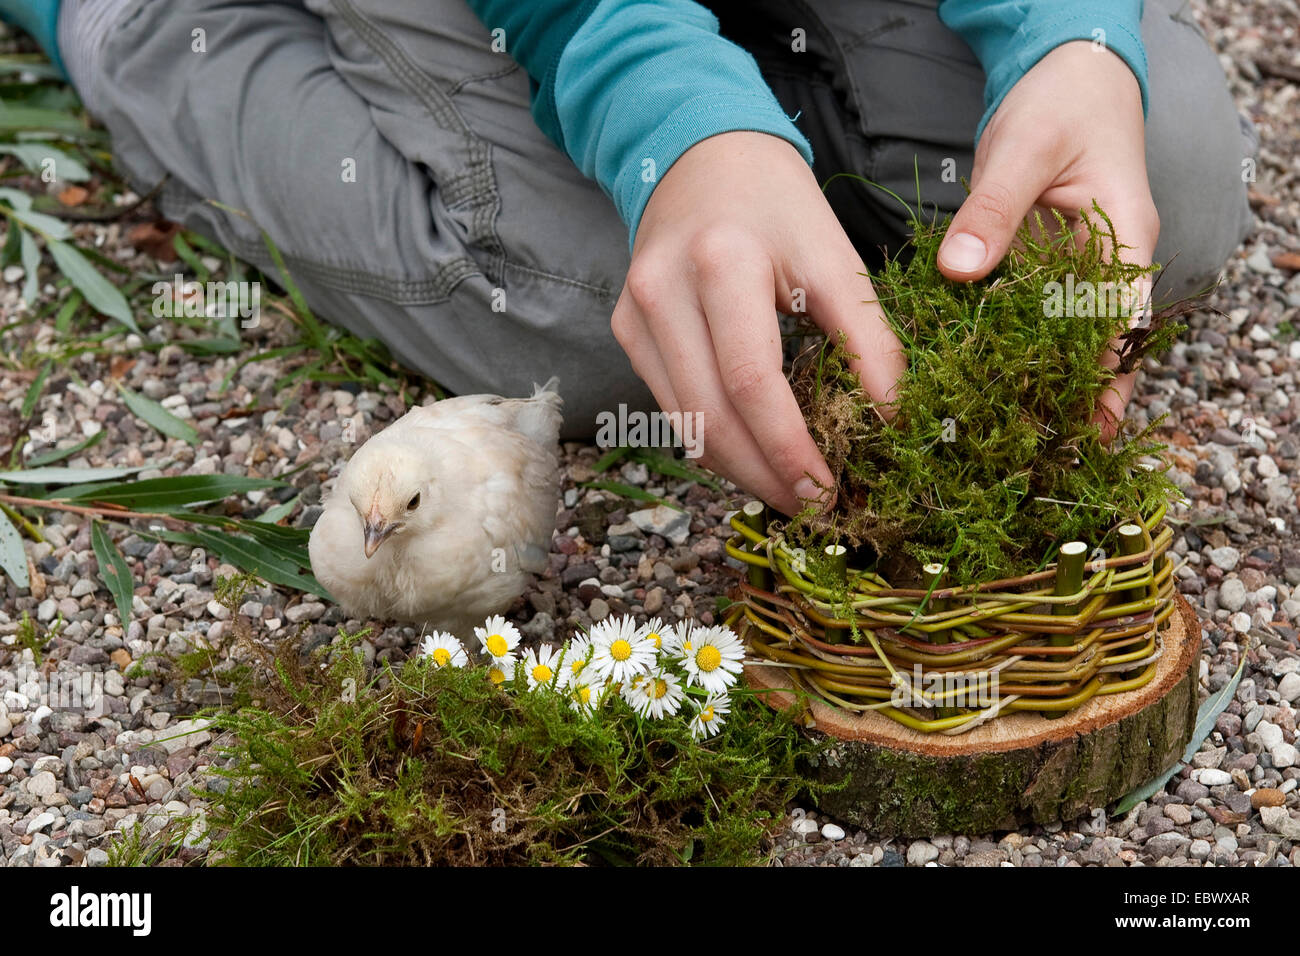 Mädchen bauen einen Osterkorb aus einer Baumscheibe, Willow Zweige, Moos, Gänseblümchen und bunten Eiern; 4. Schritt: Polsterung des Korbs mit Moos mit einem Huhn beobachten, Deutschland Stockfoto